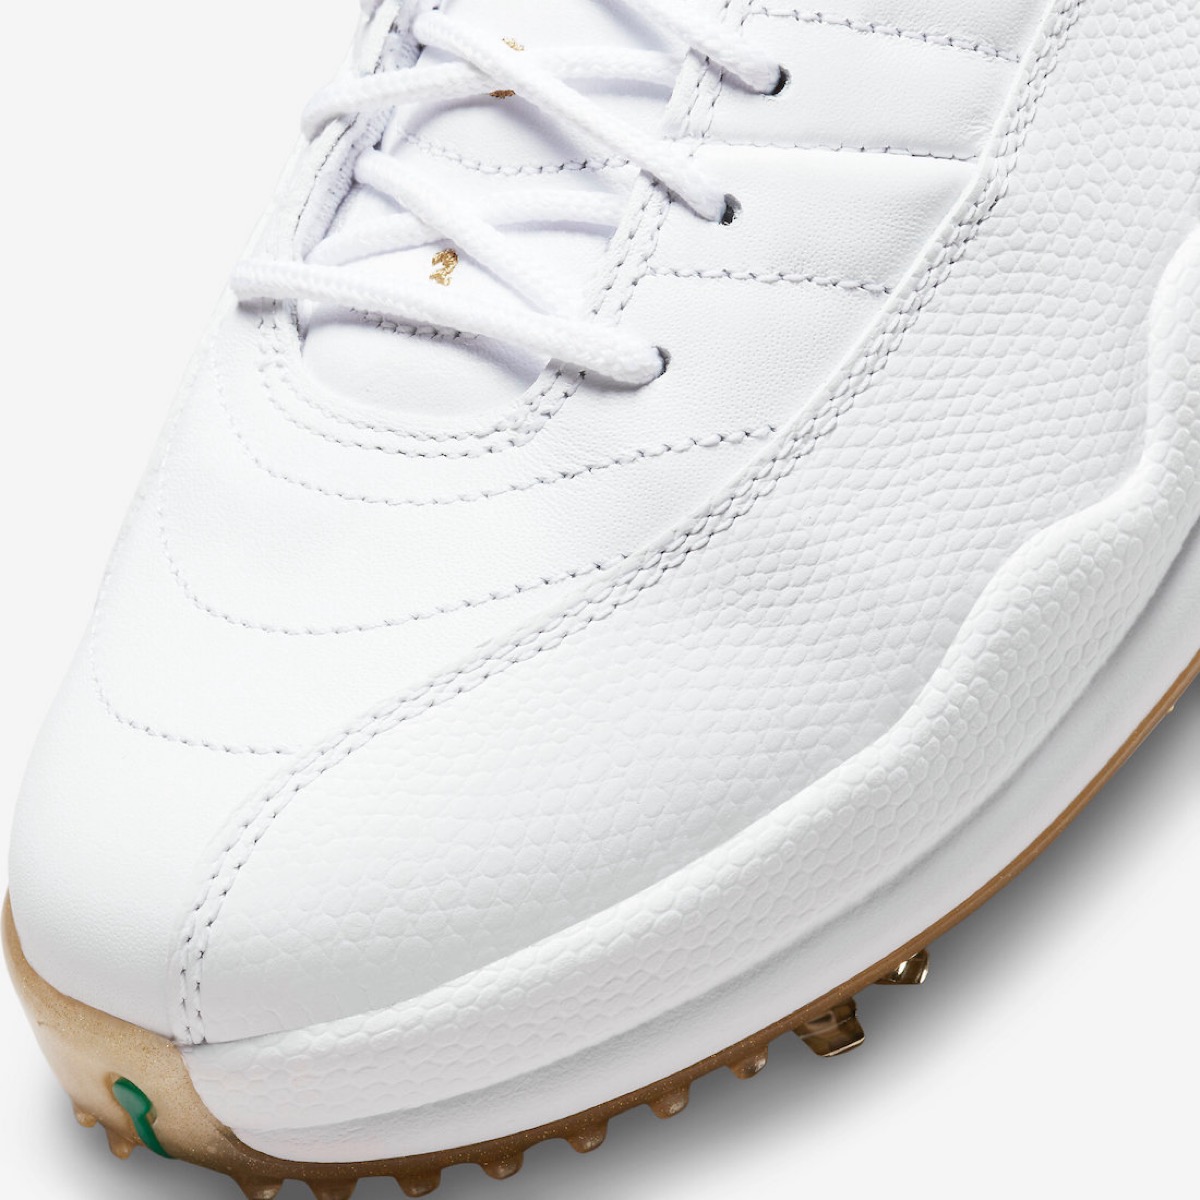 Nike Air Jordan 12 Low Golf “Metallic Gold”が国内5月21日に発売予定 ...